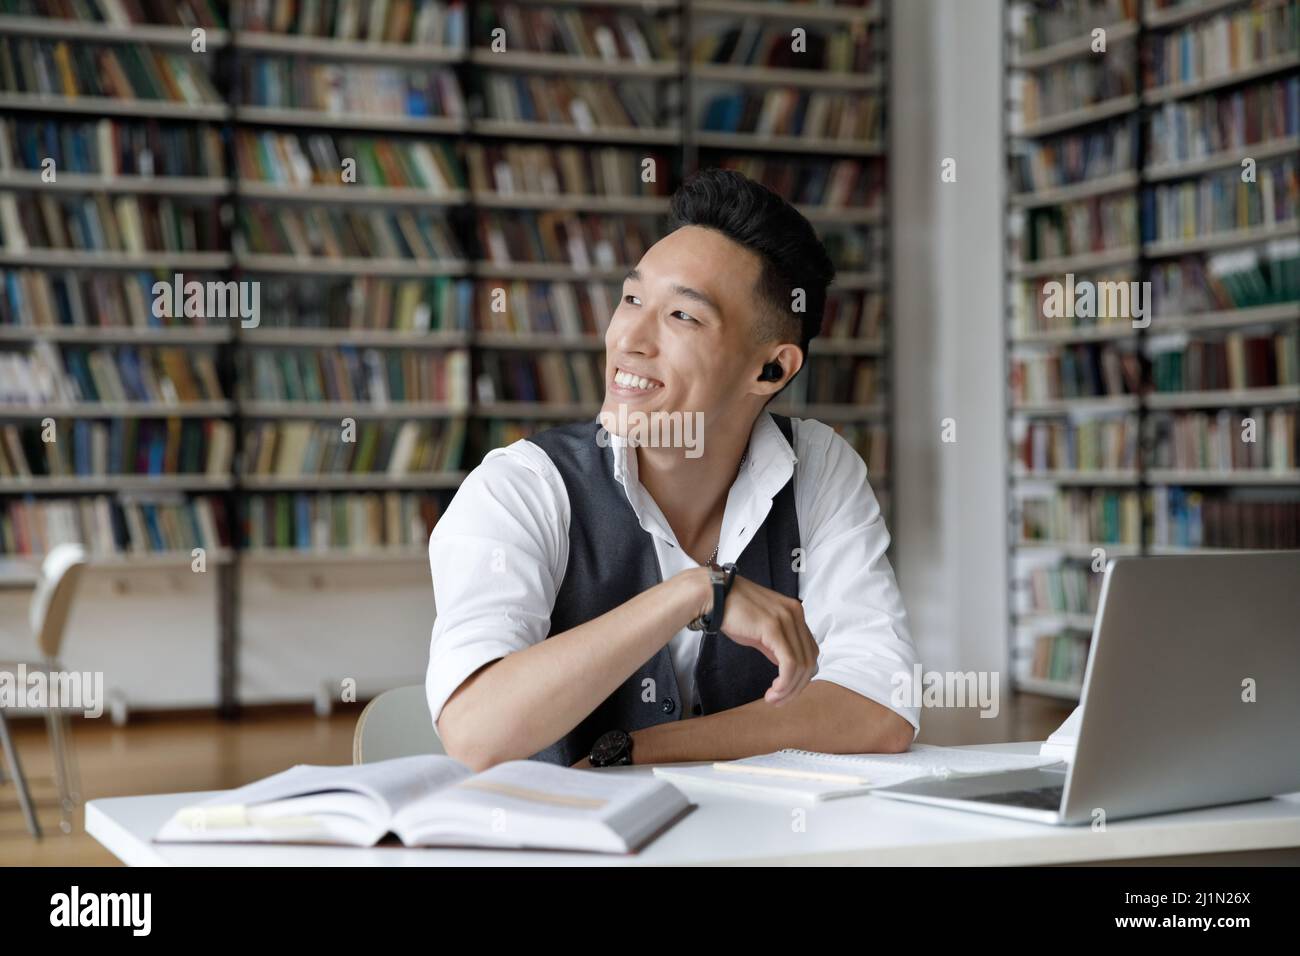 Un homme coréen souriant s'assoit à table pour étudier à la bibliothèque Banque D'Images